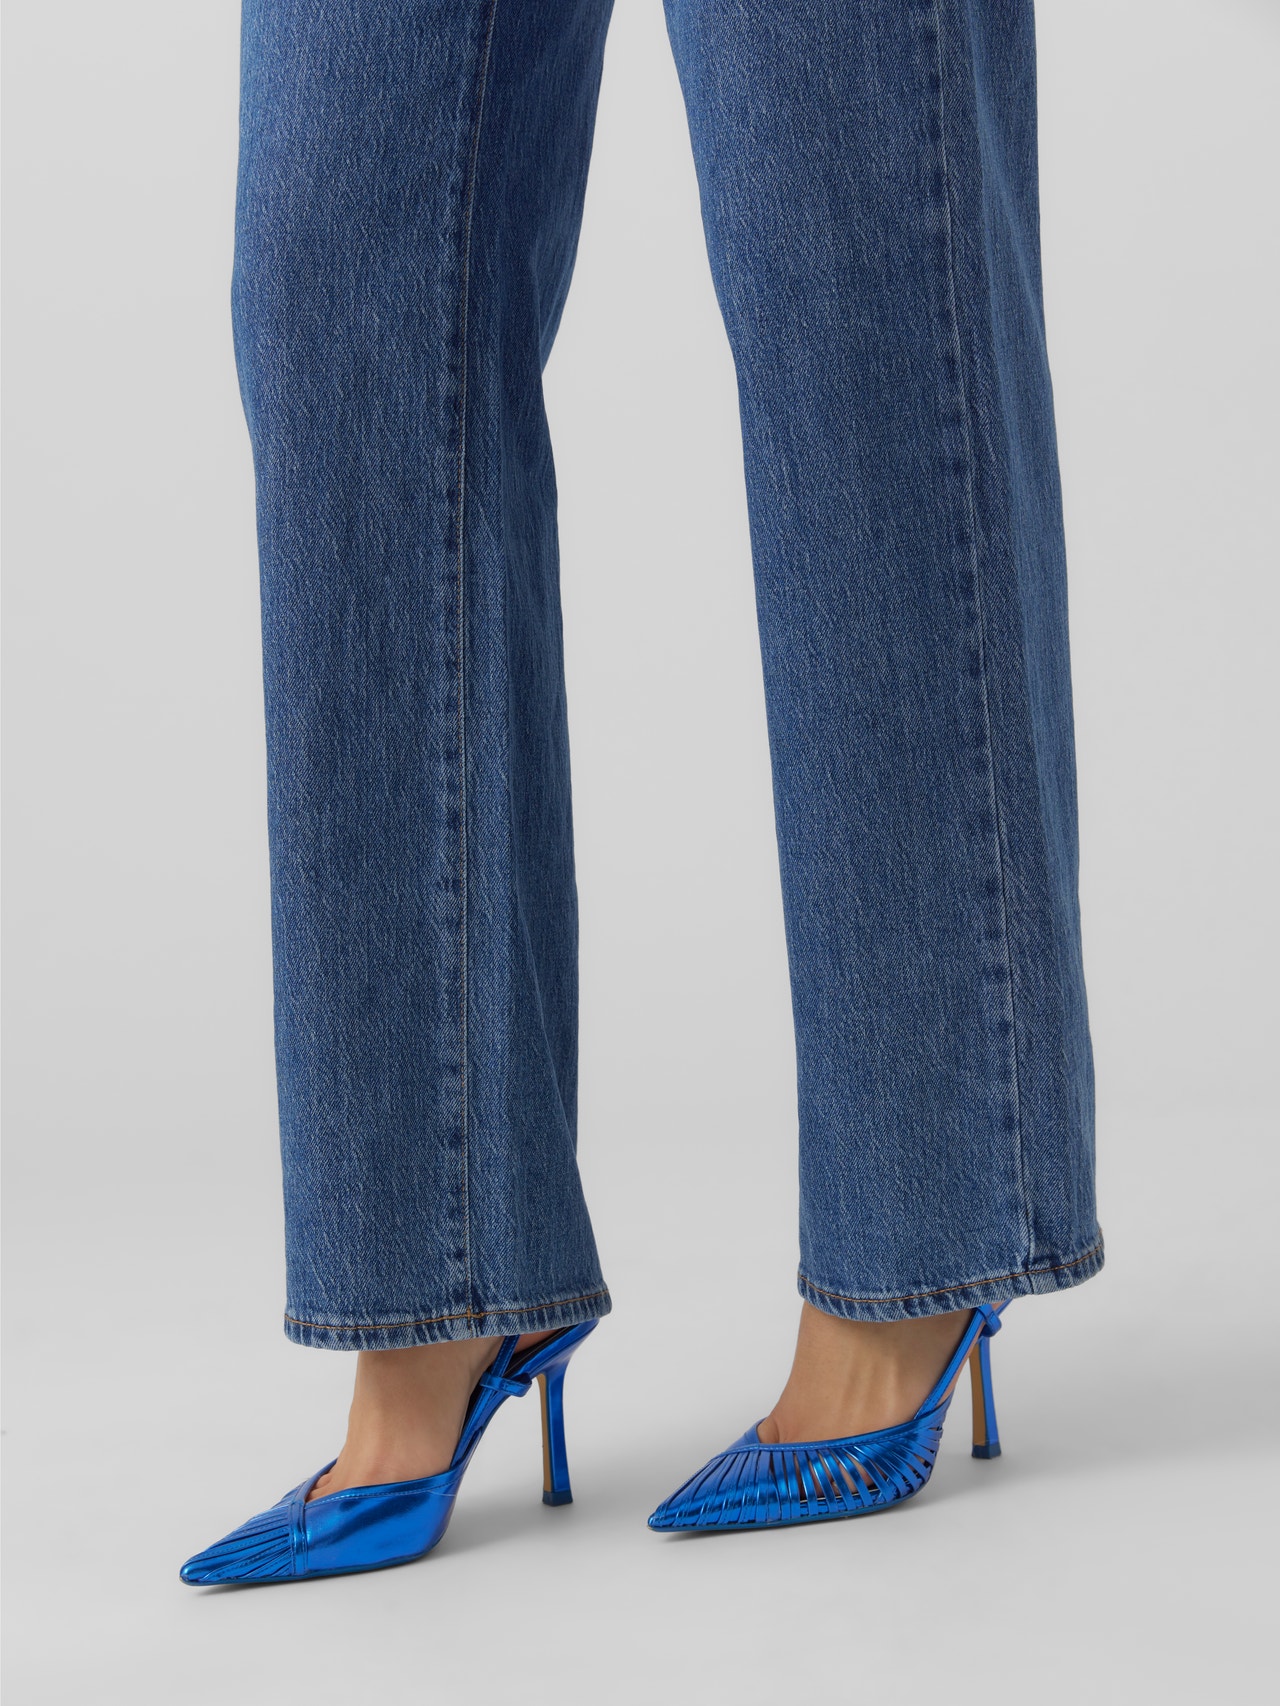 Vero Moda VMREBECCA Regular Fit Jeans -Medium Blue Denim - 10275575